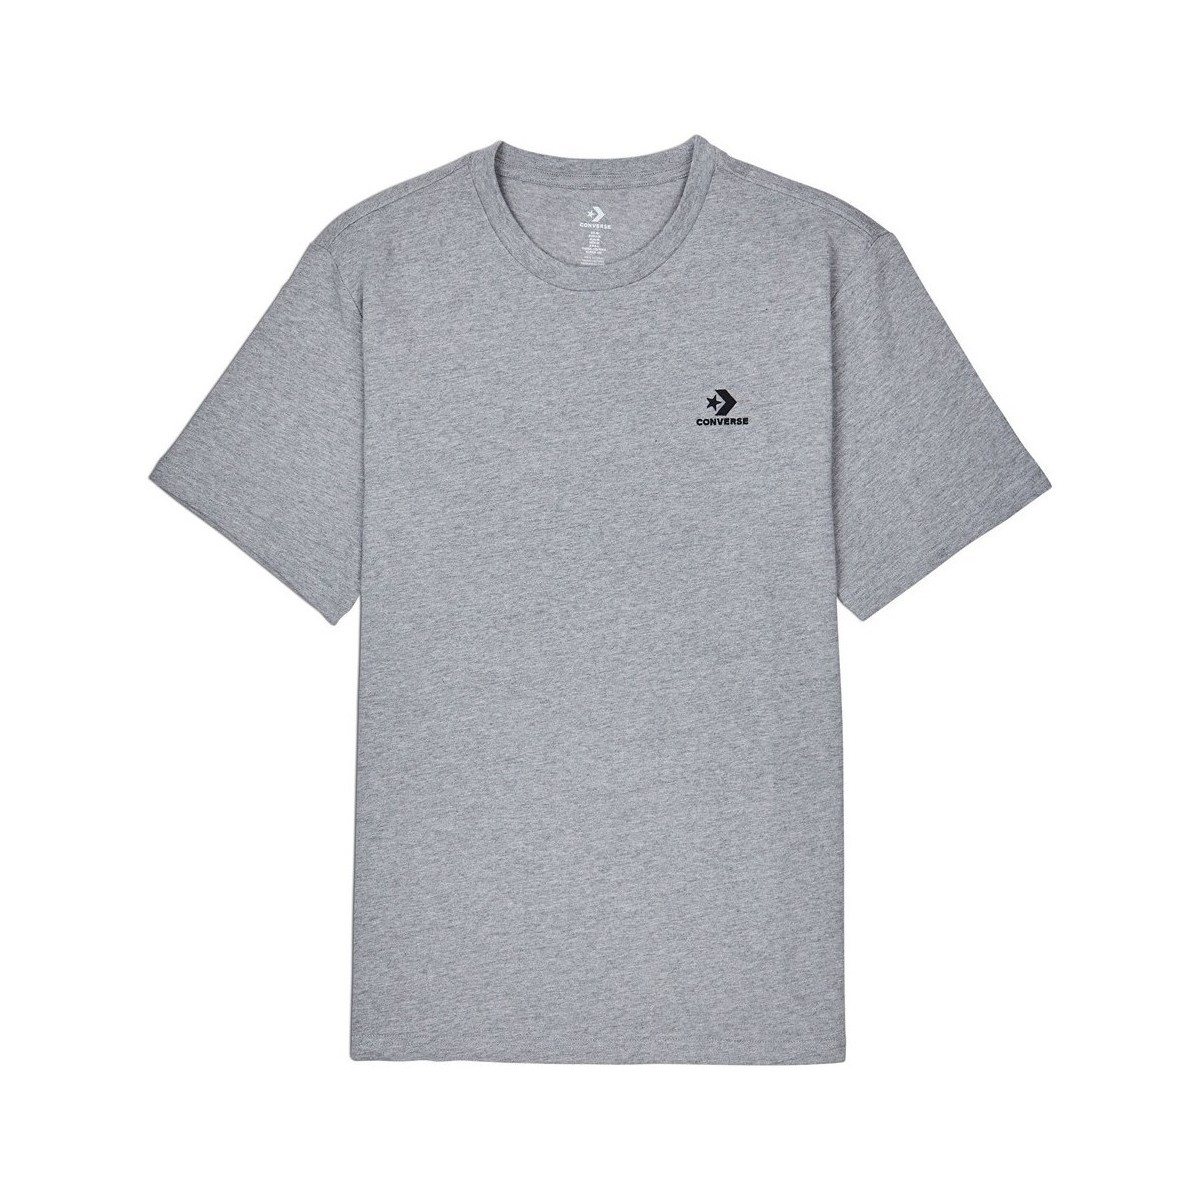 Textiel Heren T-shirts korte mouwen Converse Embroidered Star Chevron Tee Grijs